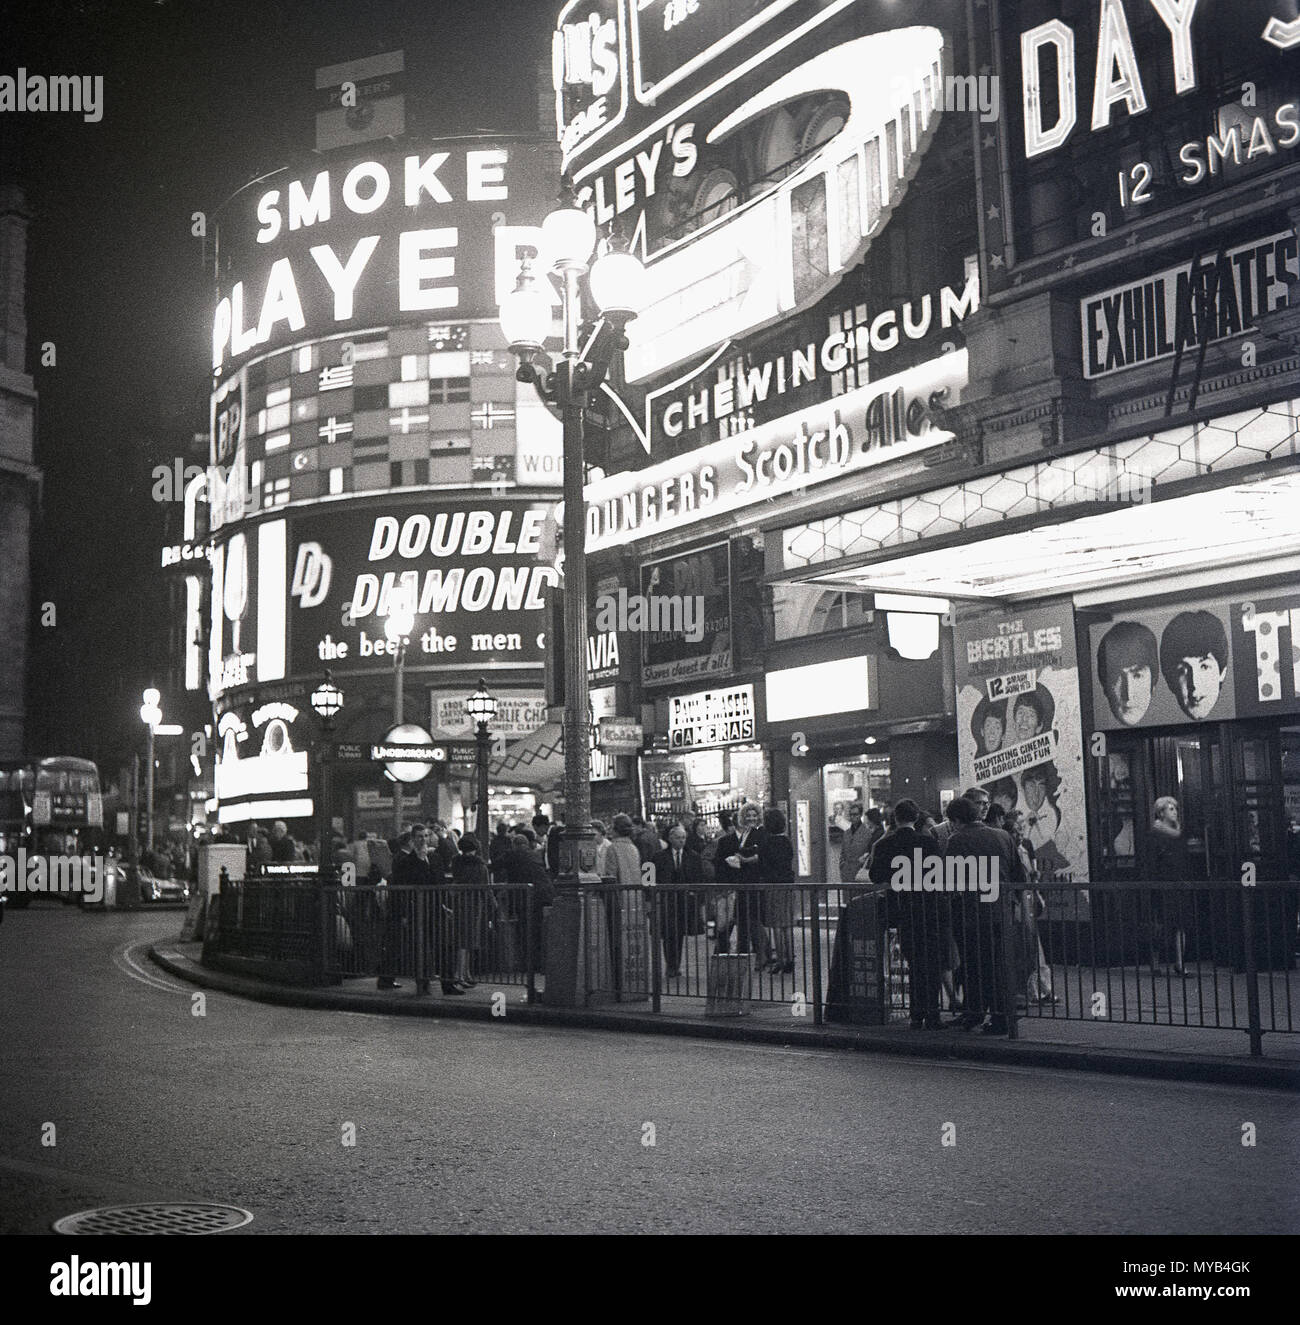 1964, historisches Bild, Menschen vor dem Pavilion Theatre am Piccadilly Circus, London, warten darauf, 'A Hard Day's Night' zu sehen, den Film mit der legendären britischen Popgruppe, den Beatles, während der Höhepunkt des Wahns von 'Beatlemania'. Die Band aus Liverpool, England, hat die Musik in dieser Zeit verändert und der Film war ein großer Erfolg. Der Straßenknoten und der öffentliche Raum wurden 1819 gebaut, um Piccadilly mit der Regent Street zu verbinden. Im West End der Stadt können einige der berühmten britischen Marken des Tages auf den Werbetafeln gesehen werden, einschließlich Spieler Zigaretten und Double Diamond Bier. Stockfoto